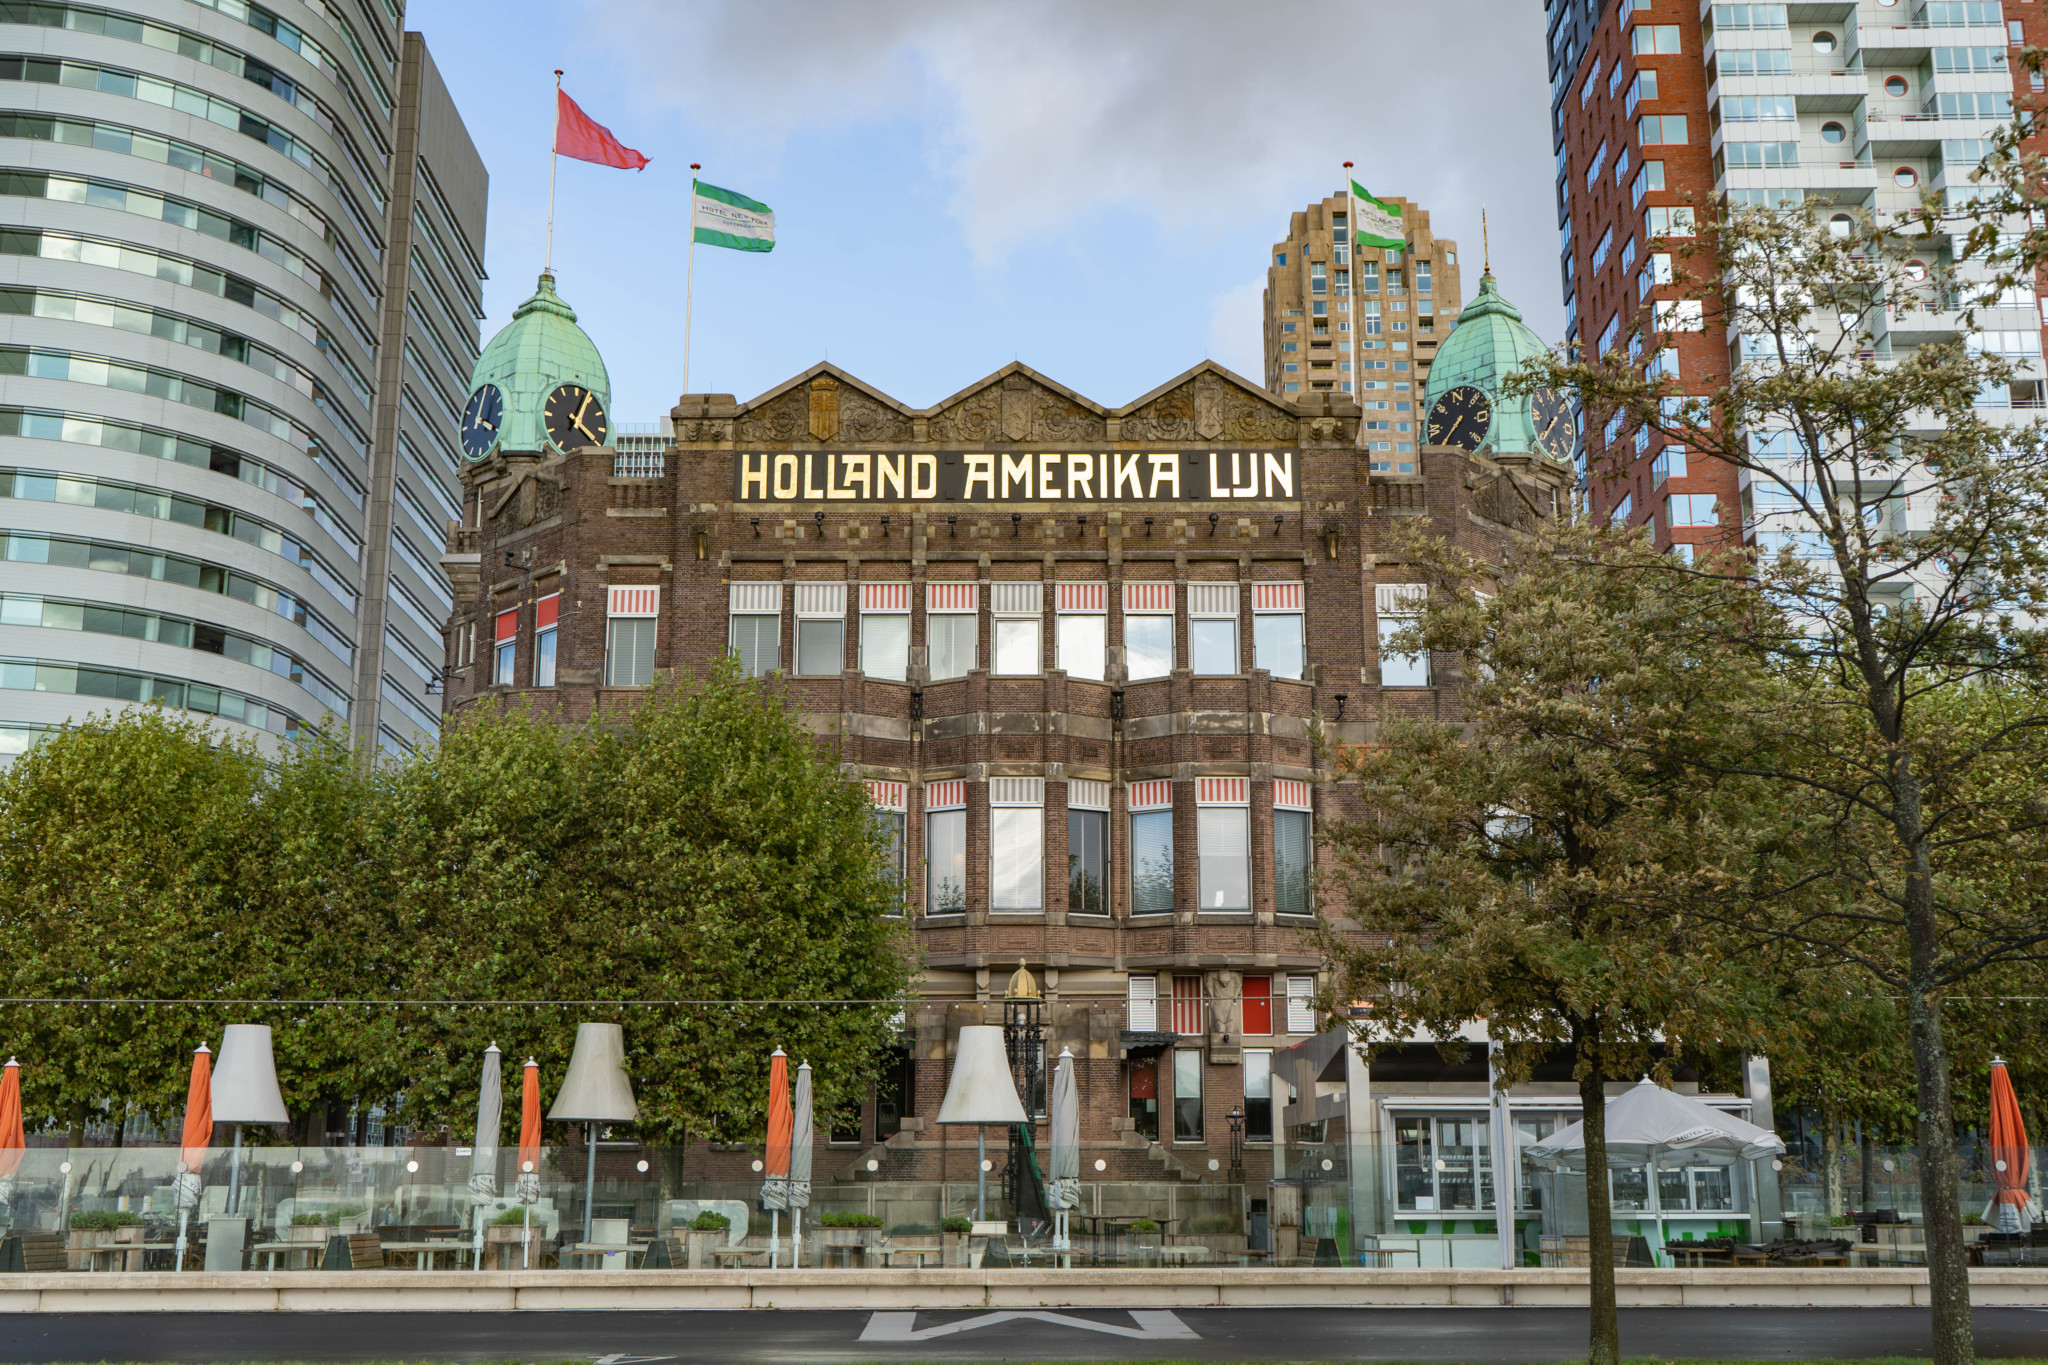 Hotel New York Rotterdam